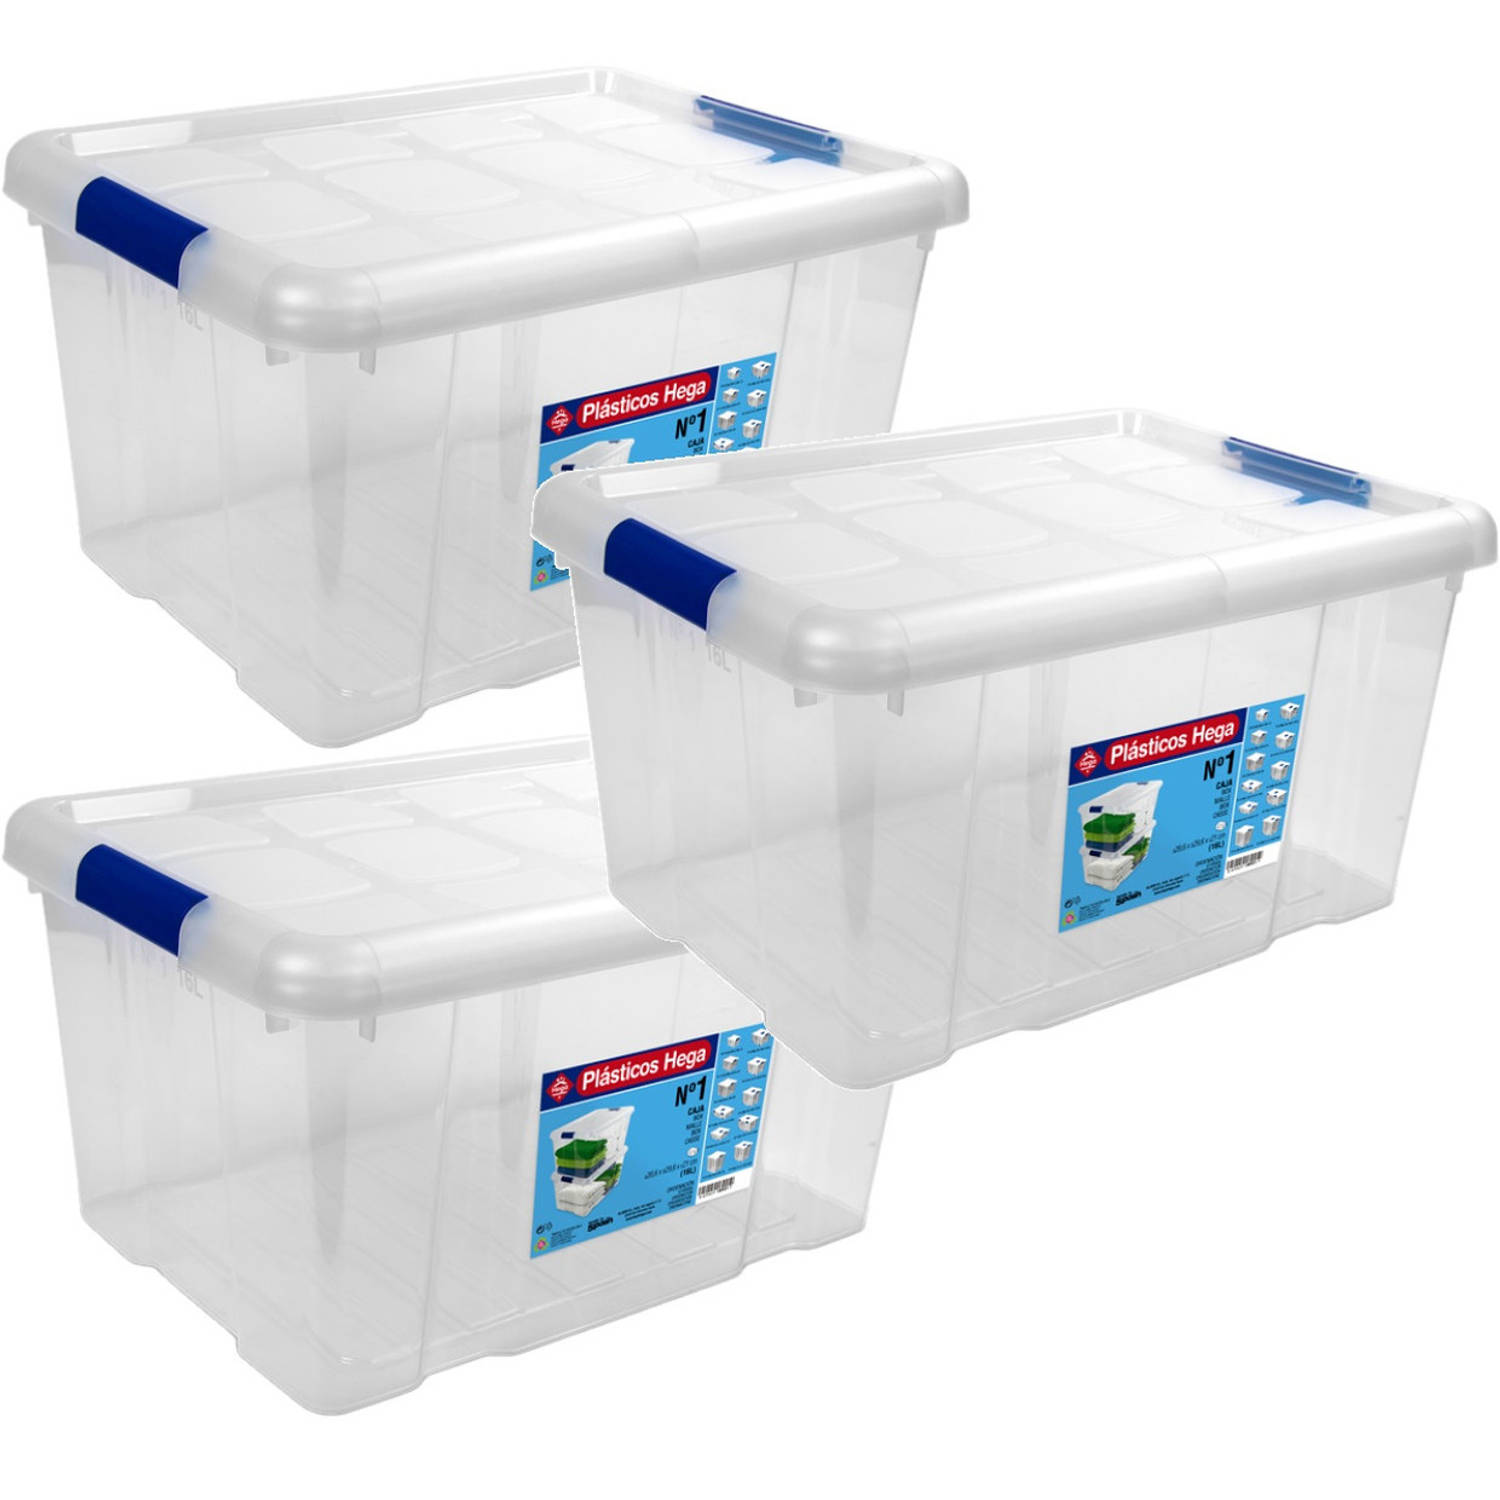 3x Opbergboxen/opbergdozen met deksel 16 liter kunststof transparant/blauw - Opbergbox